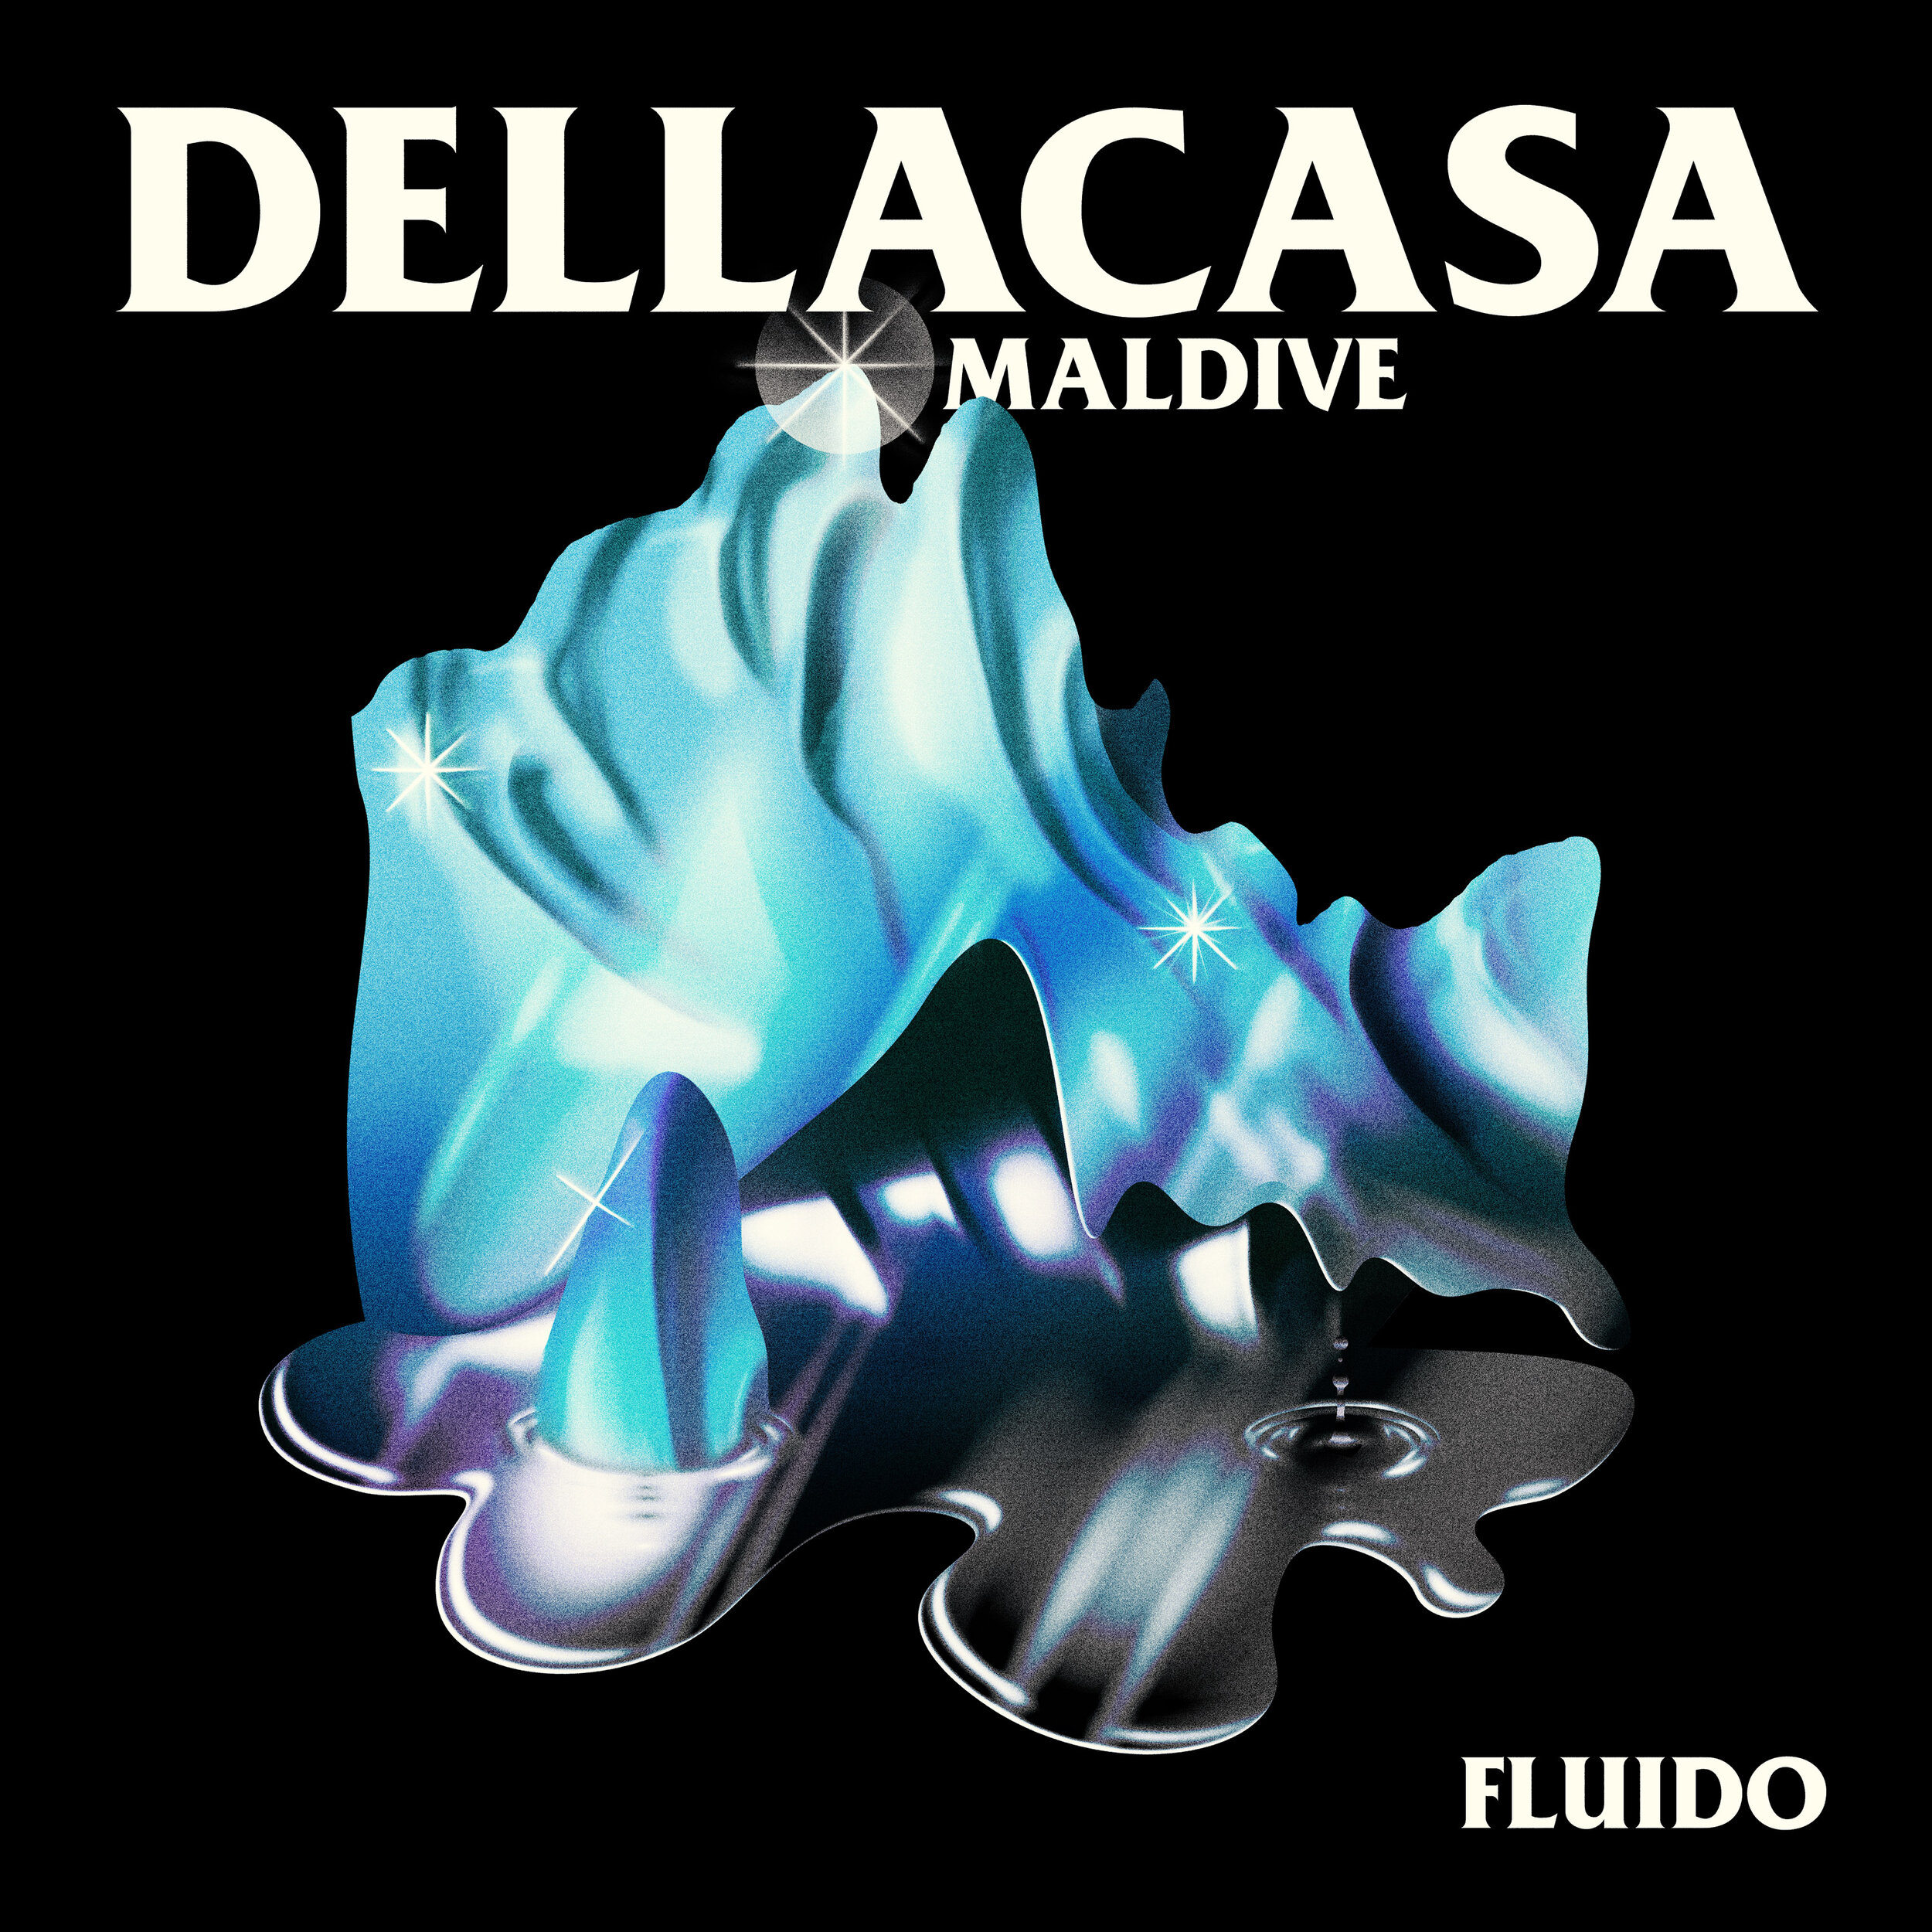 Dellacasa Maldive - Fluido.jpg